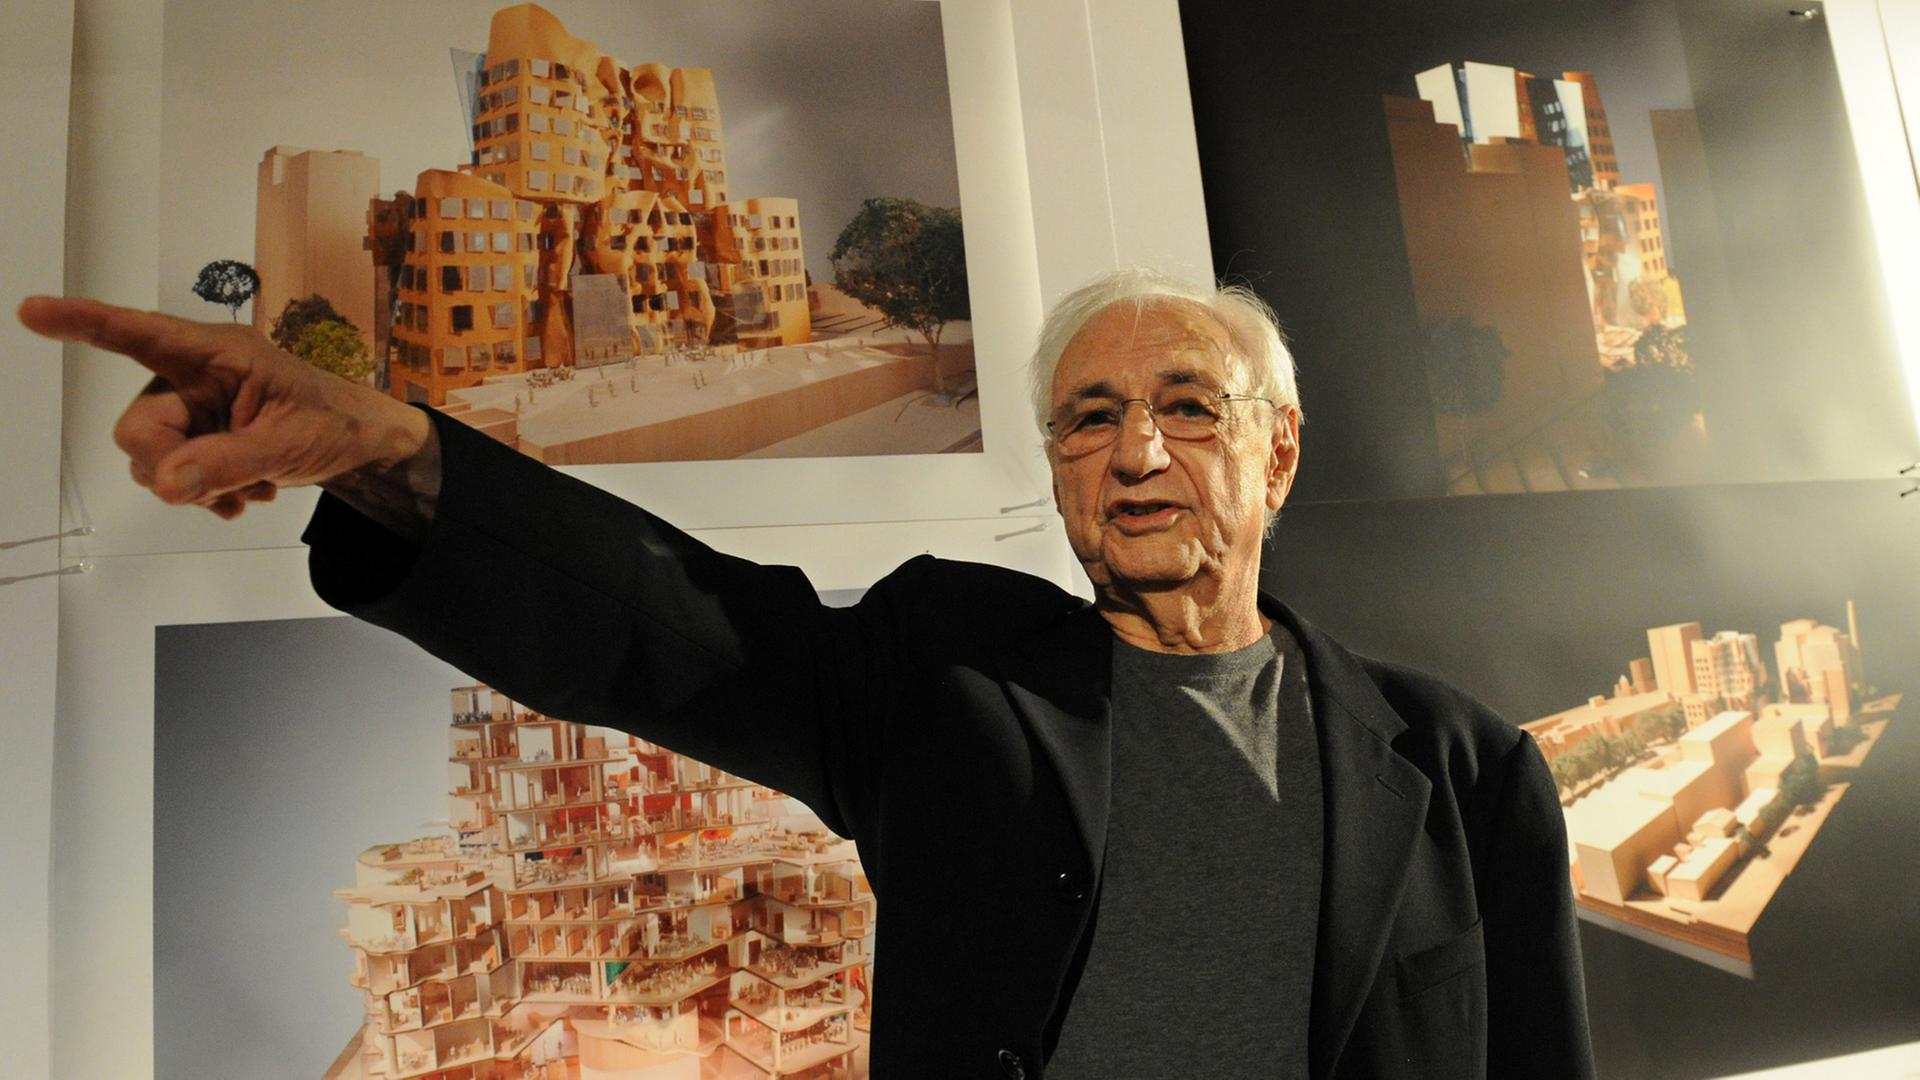 Der kanadische Architekt Frank Gehry stellt seinen Bau für die australische Stadt Sydney vor: eine Business School für die Technische Universität, die einer zerknüllten Papiertüte ähnelt, Dezember 2010